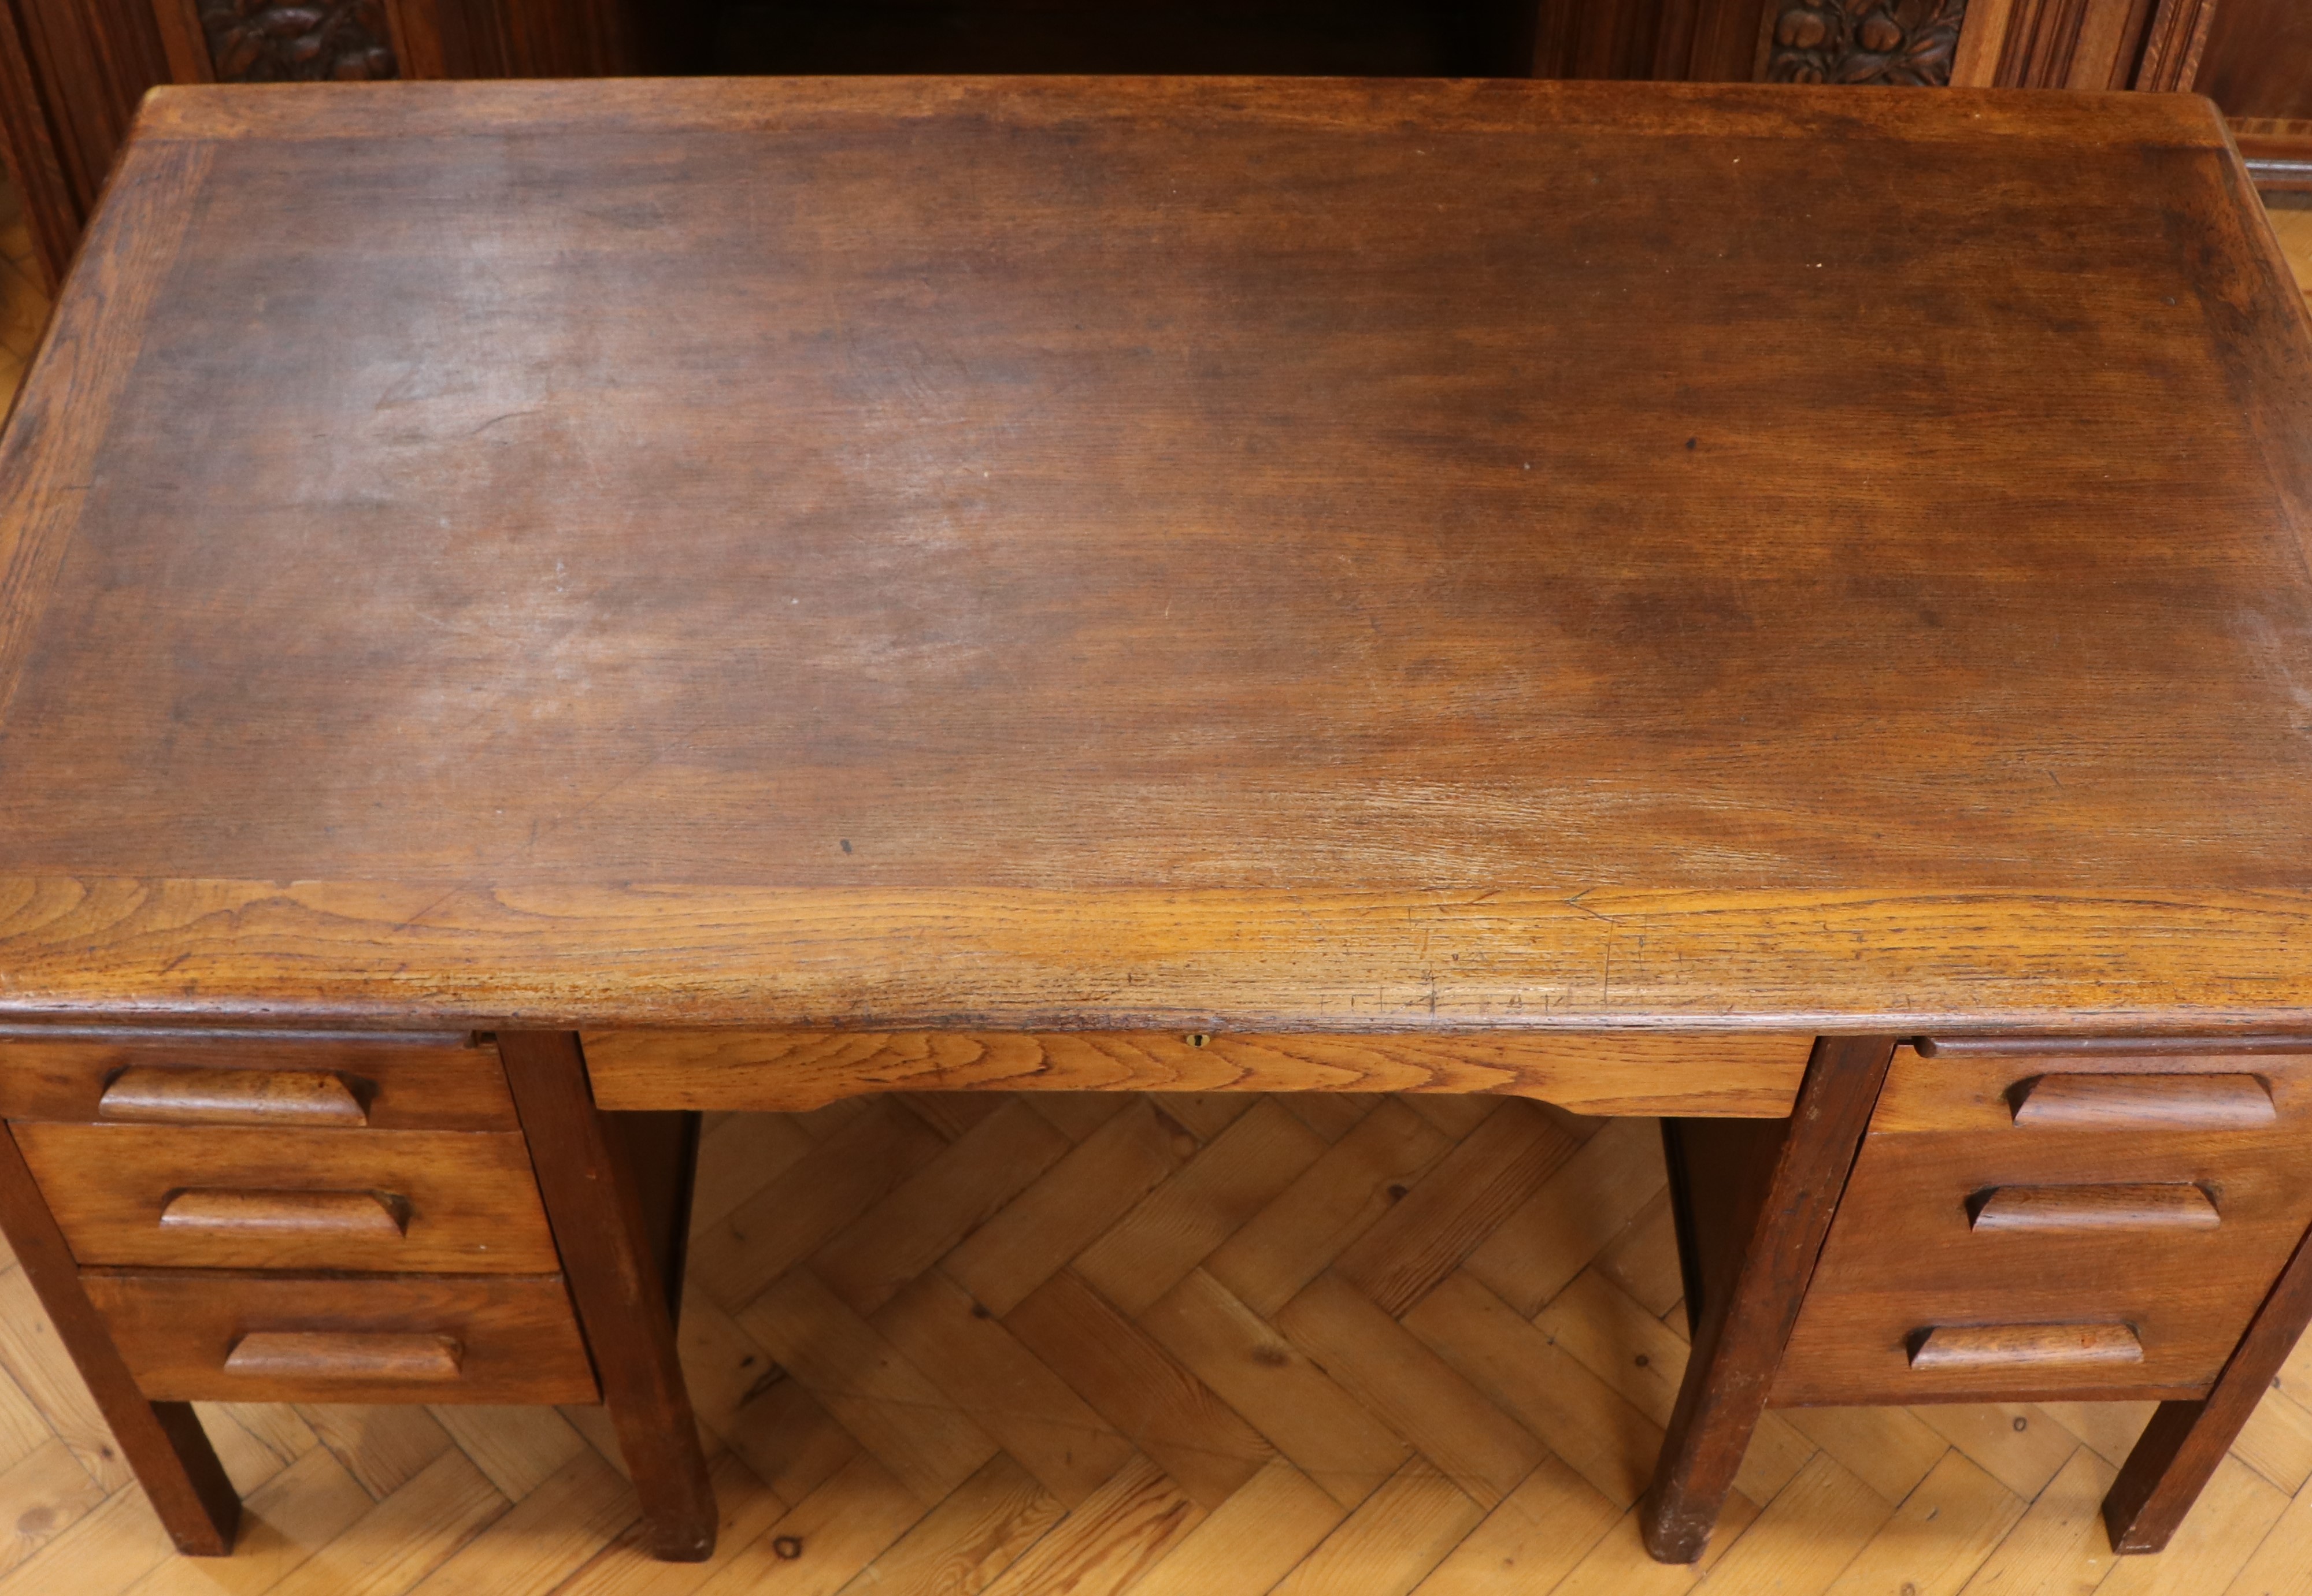 A 1930s-1940s oak office desk, 153 cm x 83 cm x 73 cm high - Image 2 of 3